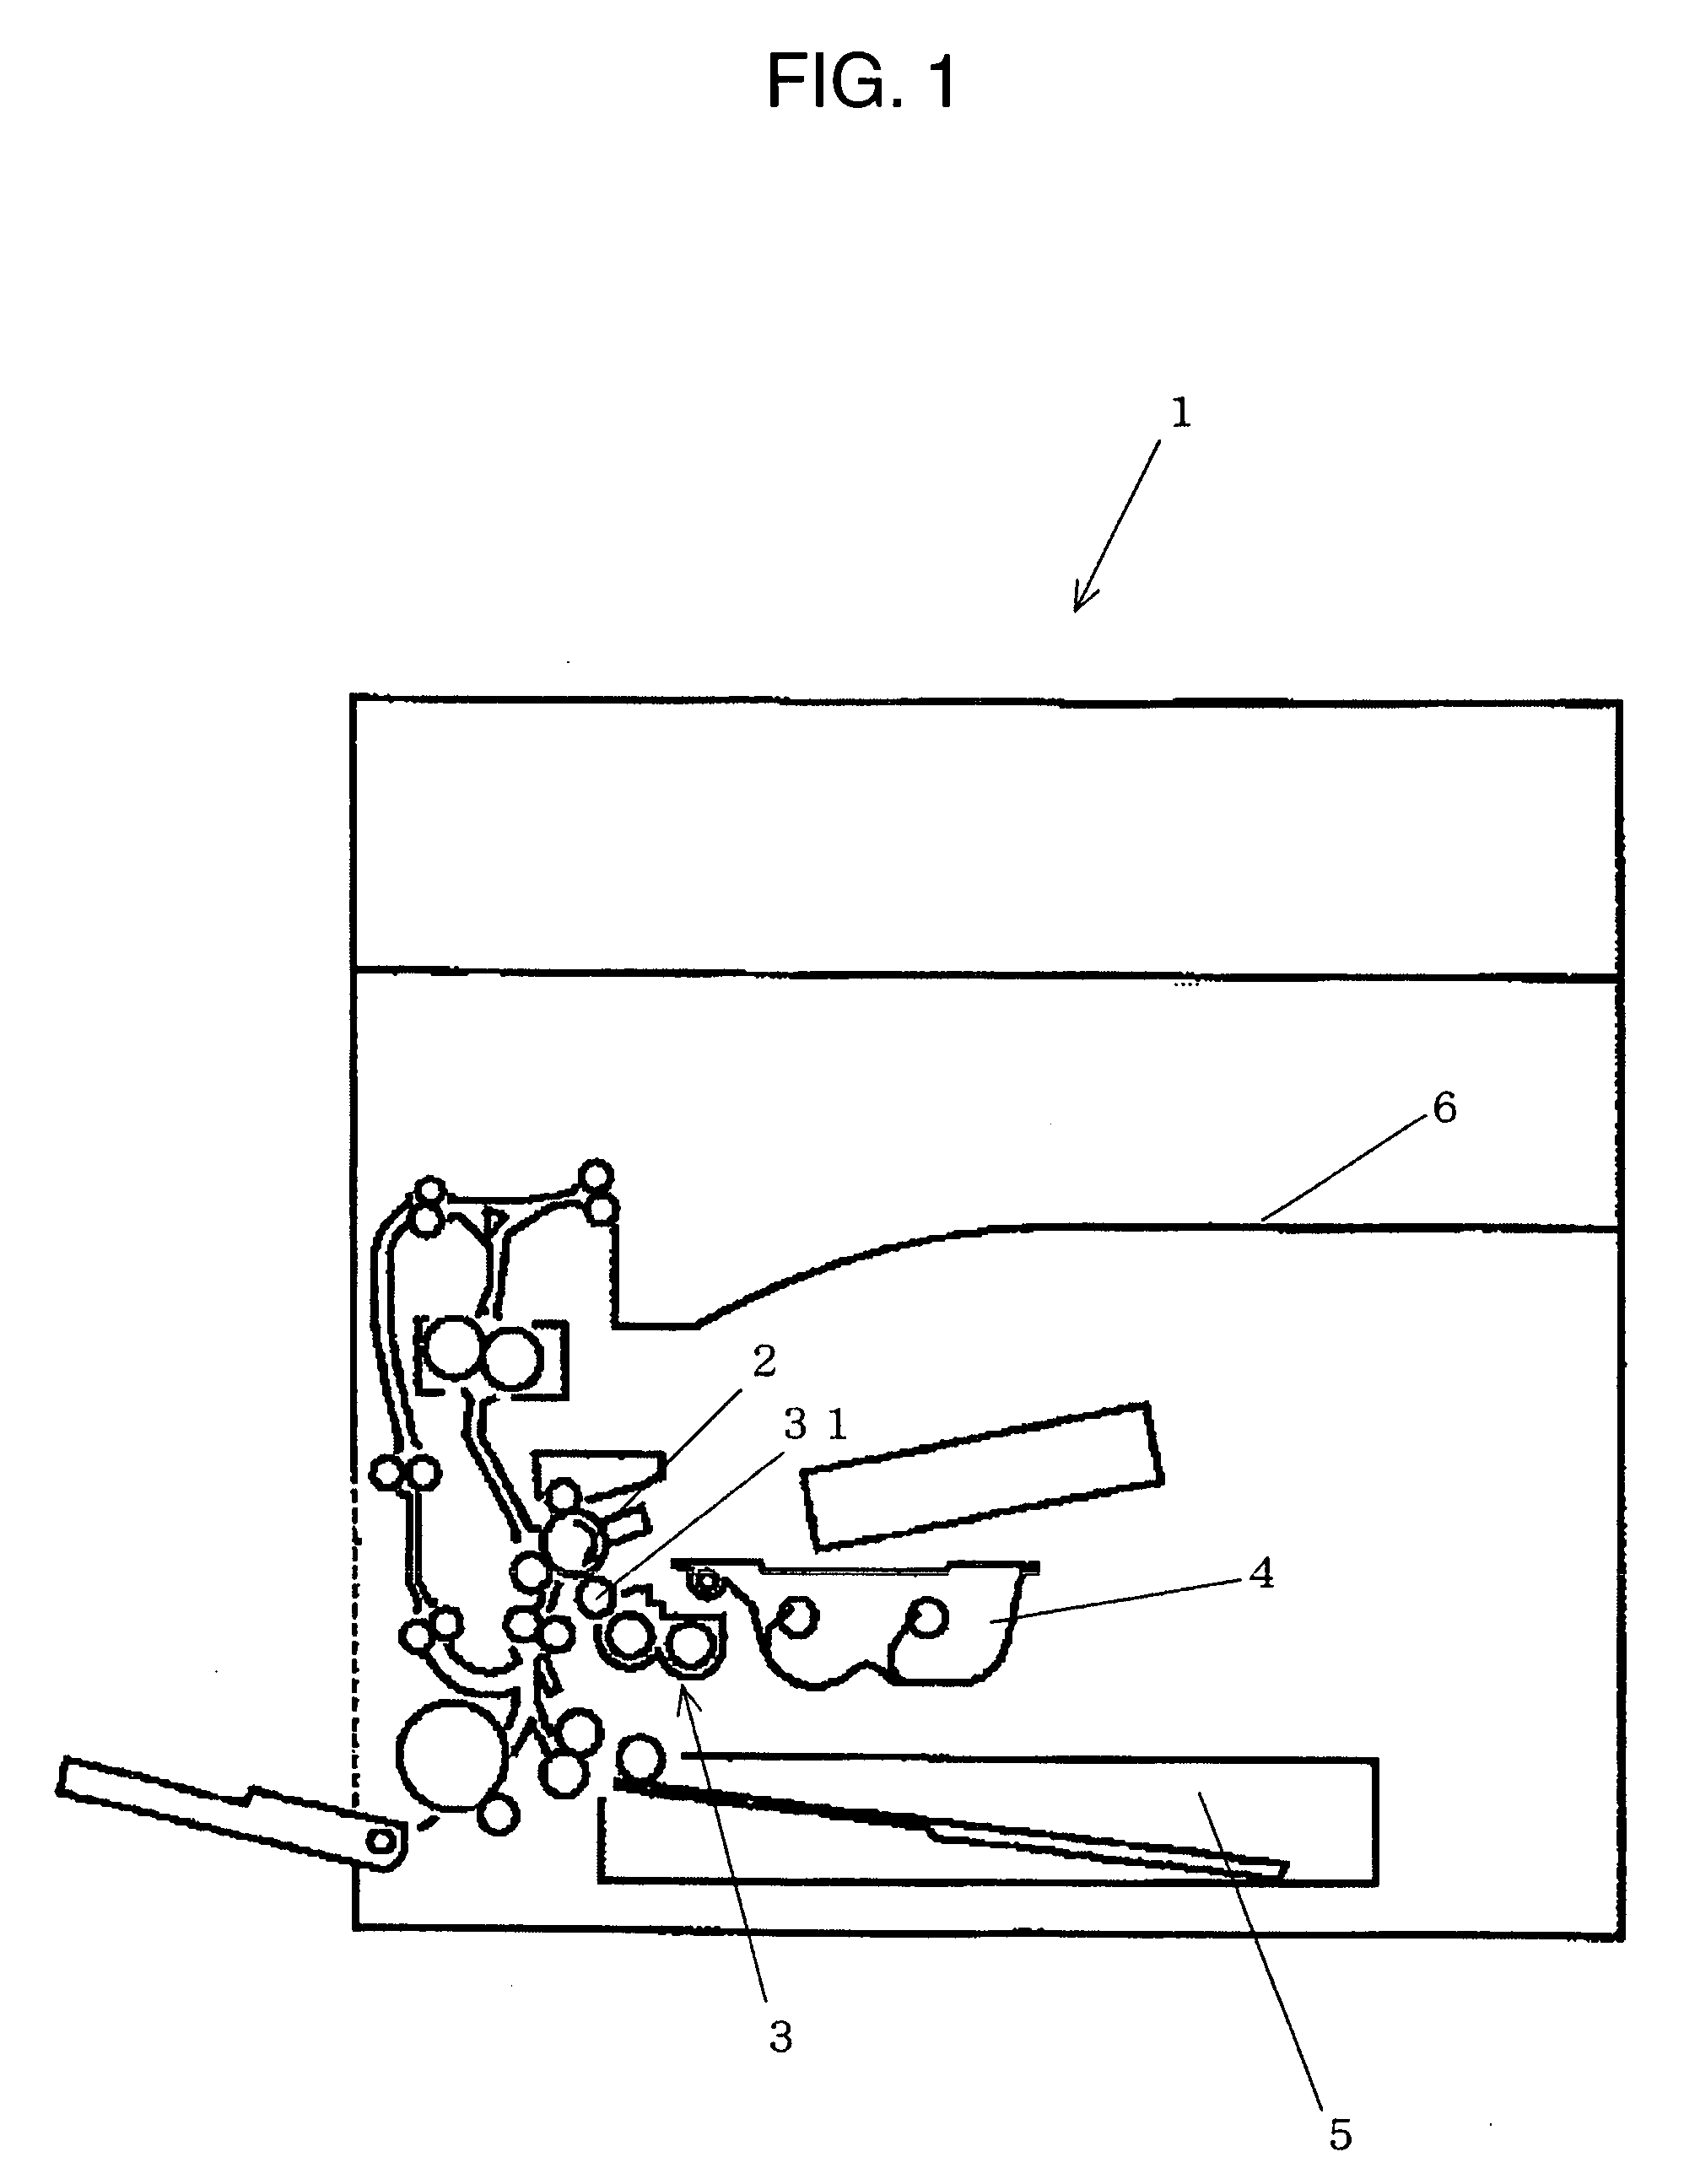 Powder conveying apparatus